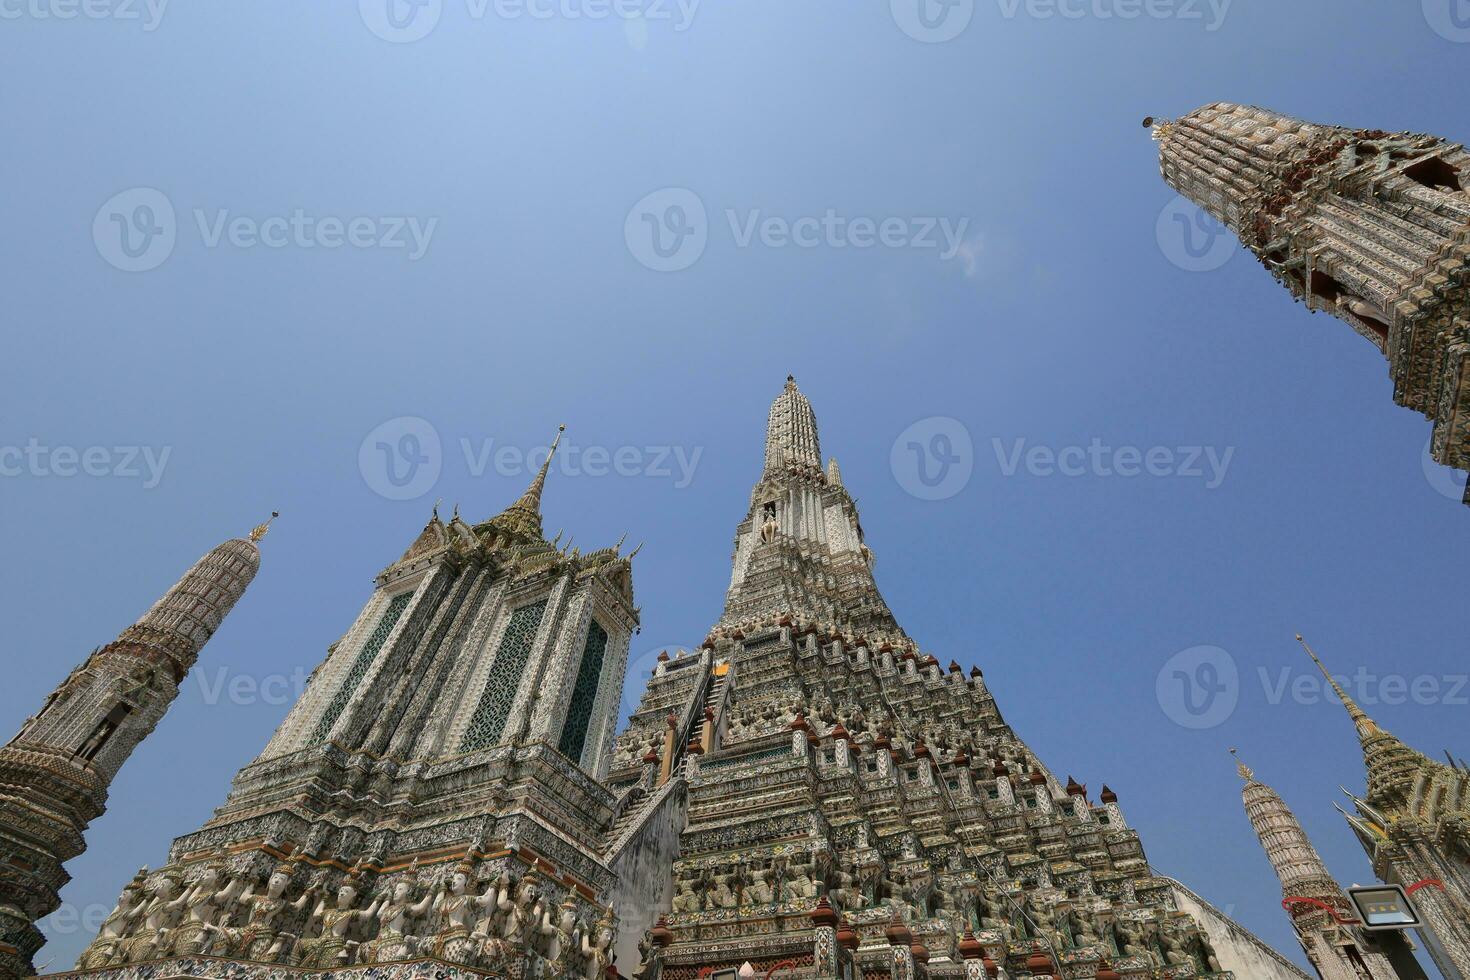 wat arun, gezien van de bodem omhoog, ziet de blauw lucht. wat arun is een iconisch mijlpaal van Bangkok, Thailand. foto